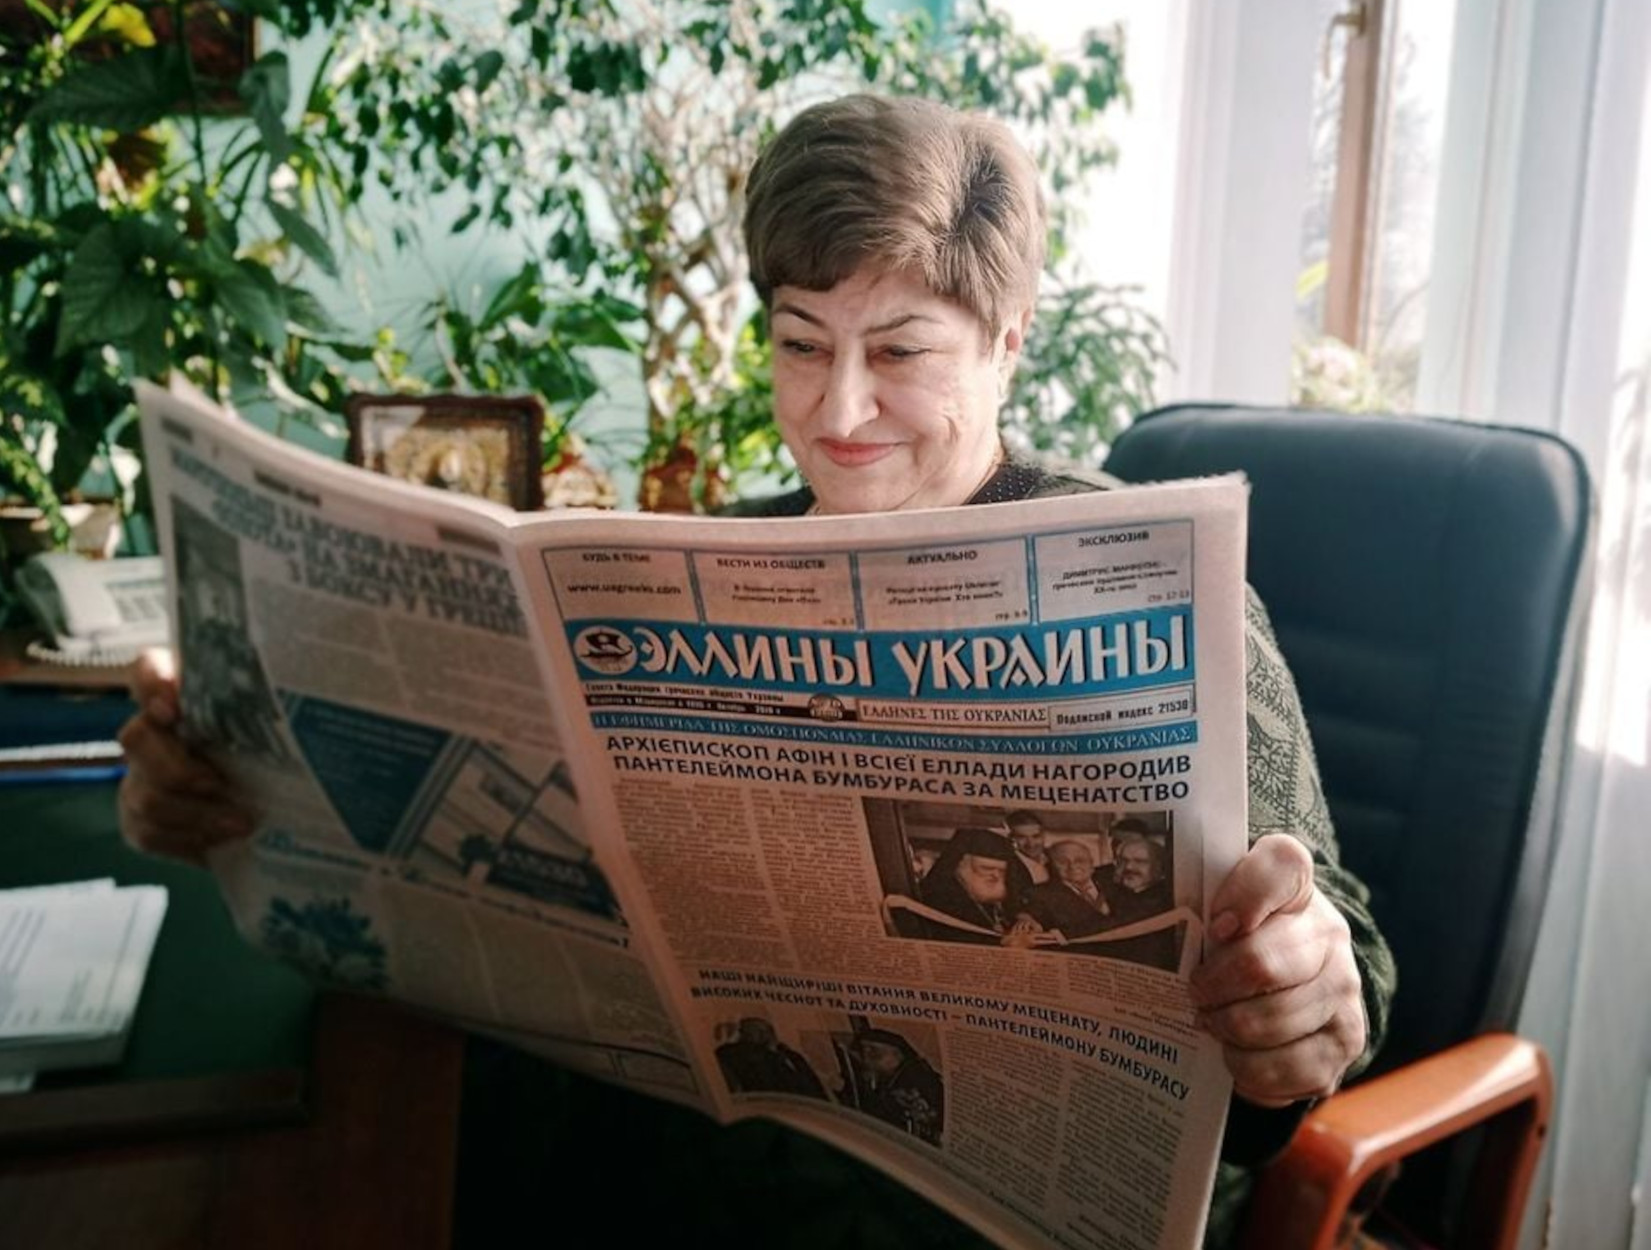 Μαριούπολη: Ο πόλεμος «έκλεισε» την εφημερίδα των Ελλήνων της Ουκρανίας – Η ιστορική πορεία της